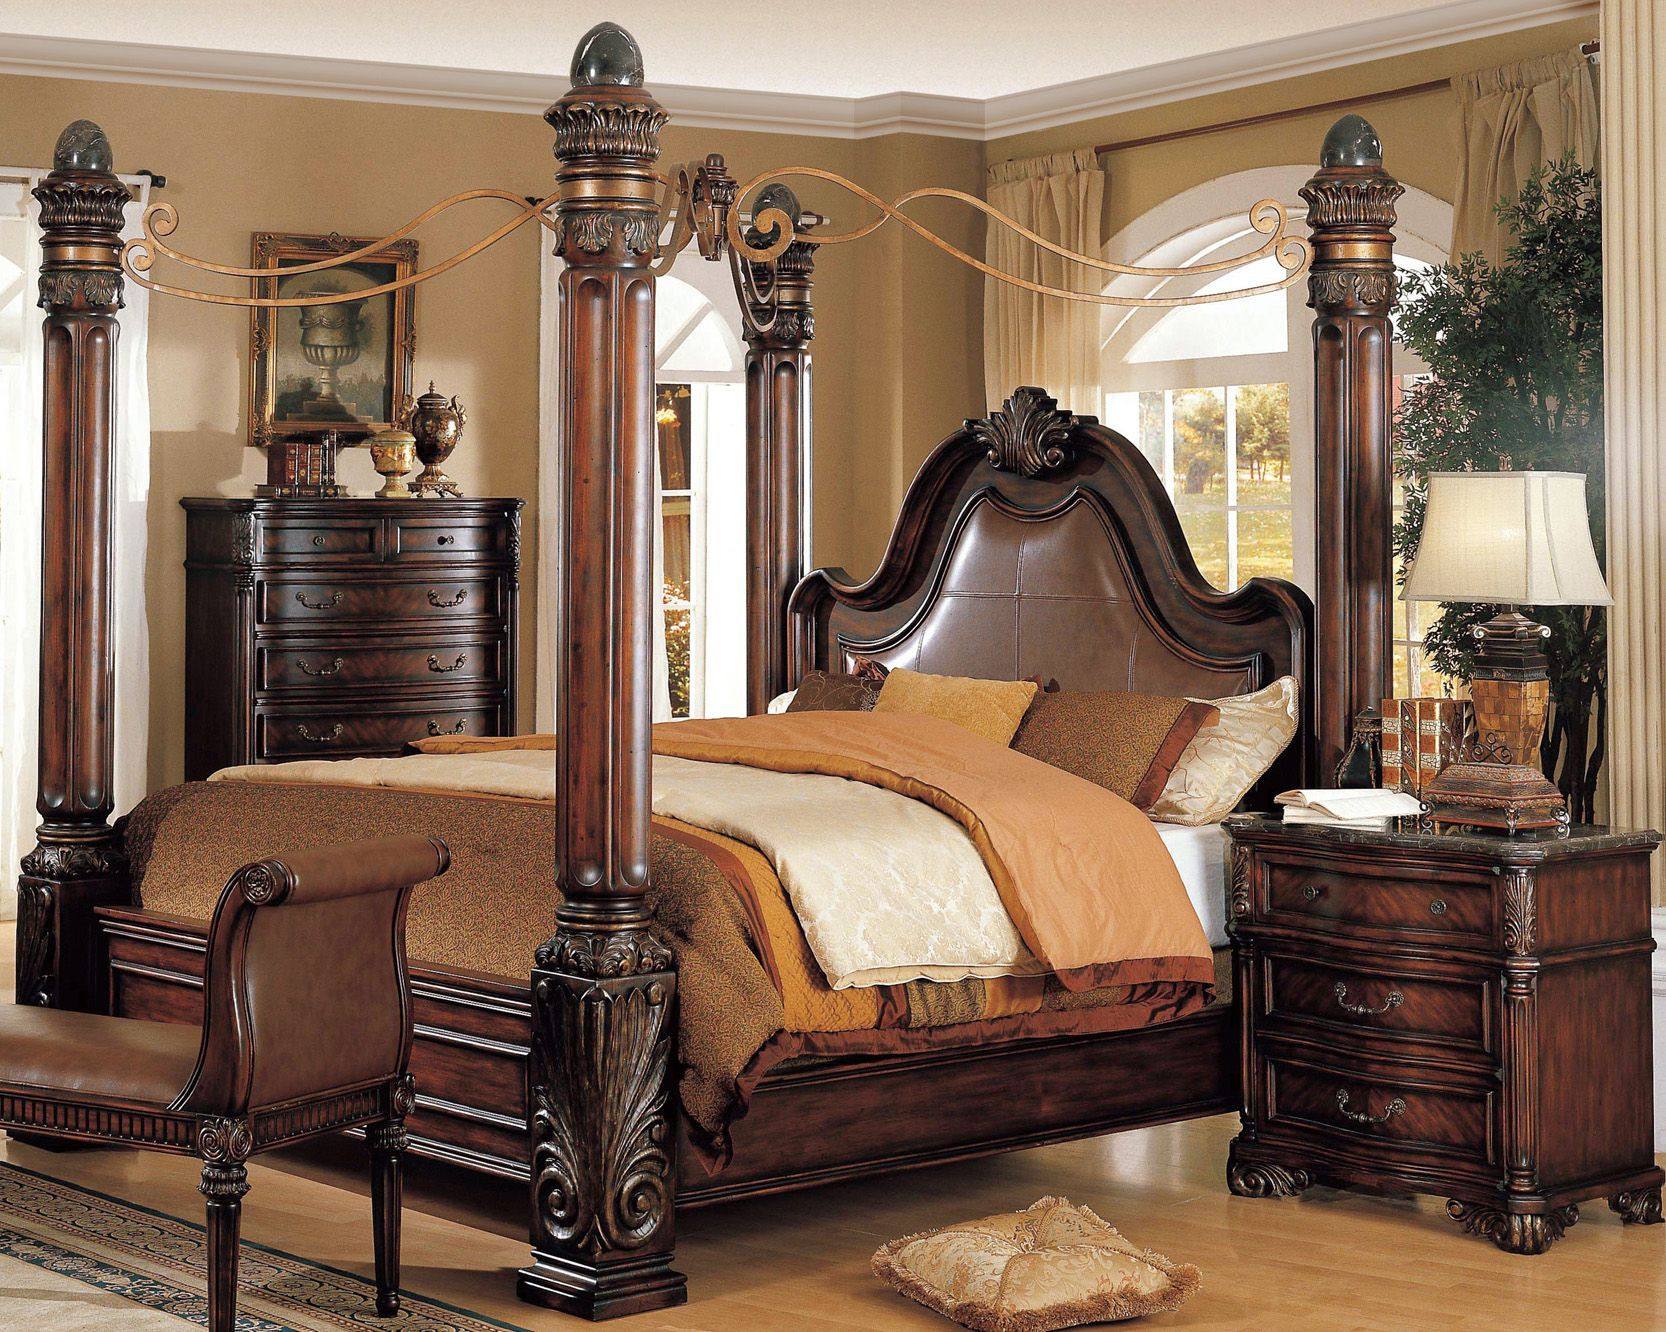 King Size Master Bedroom Sets
 Bedroom Best King Size Canopy Bed For Elegant Master